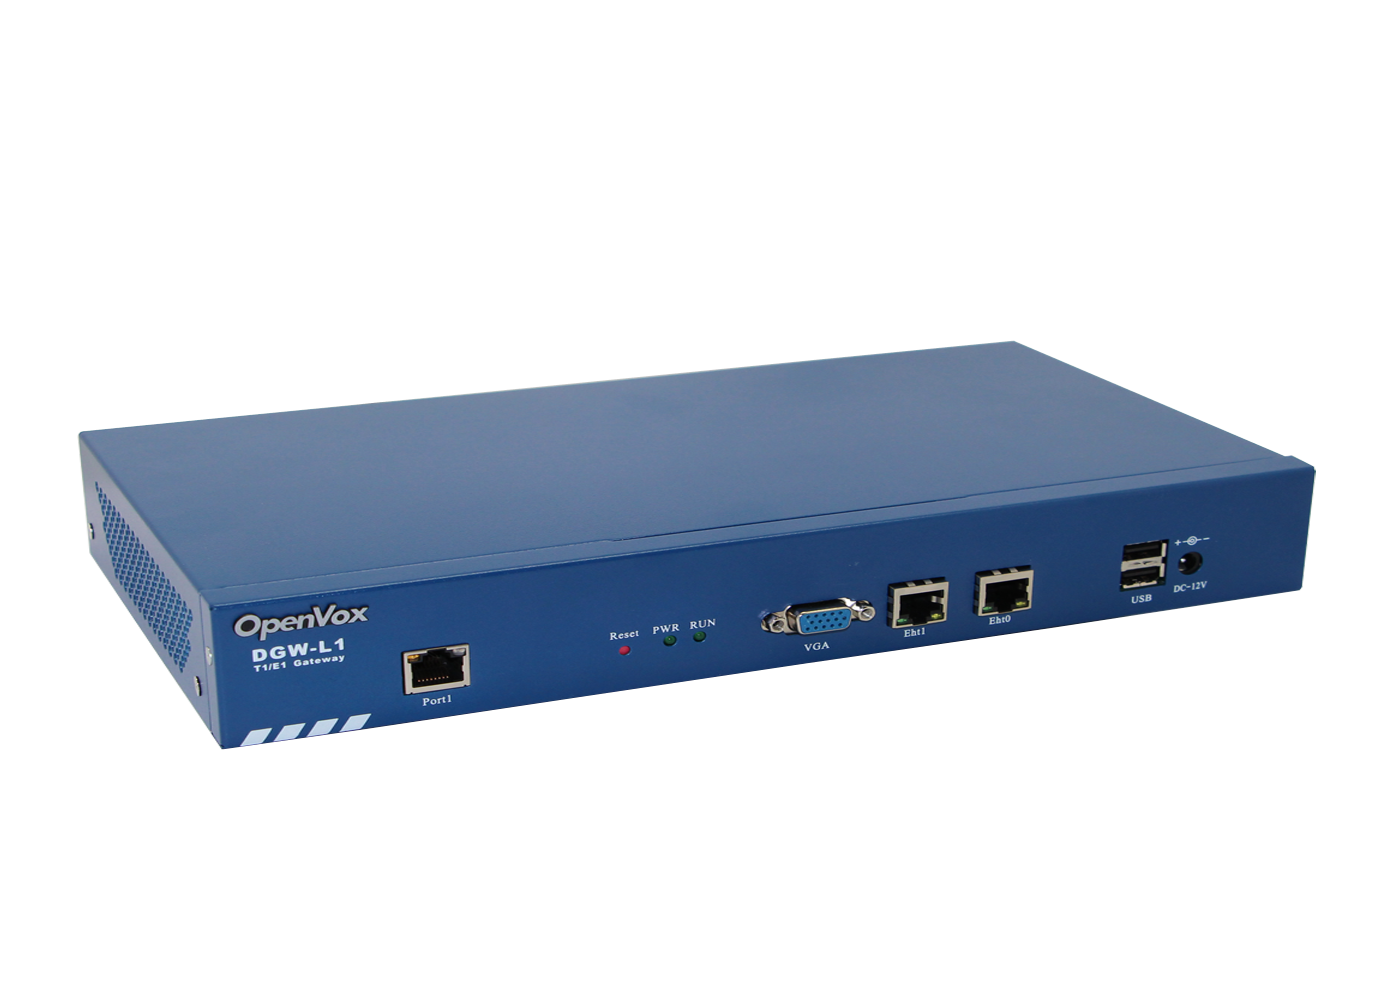 OpenVox DGW-L1 Series E1/T1/PRI VoIP Gateway